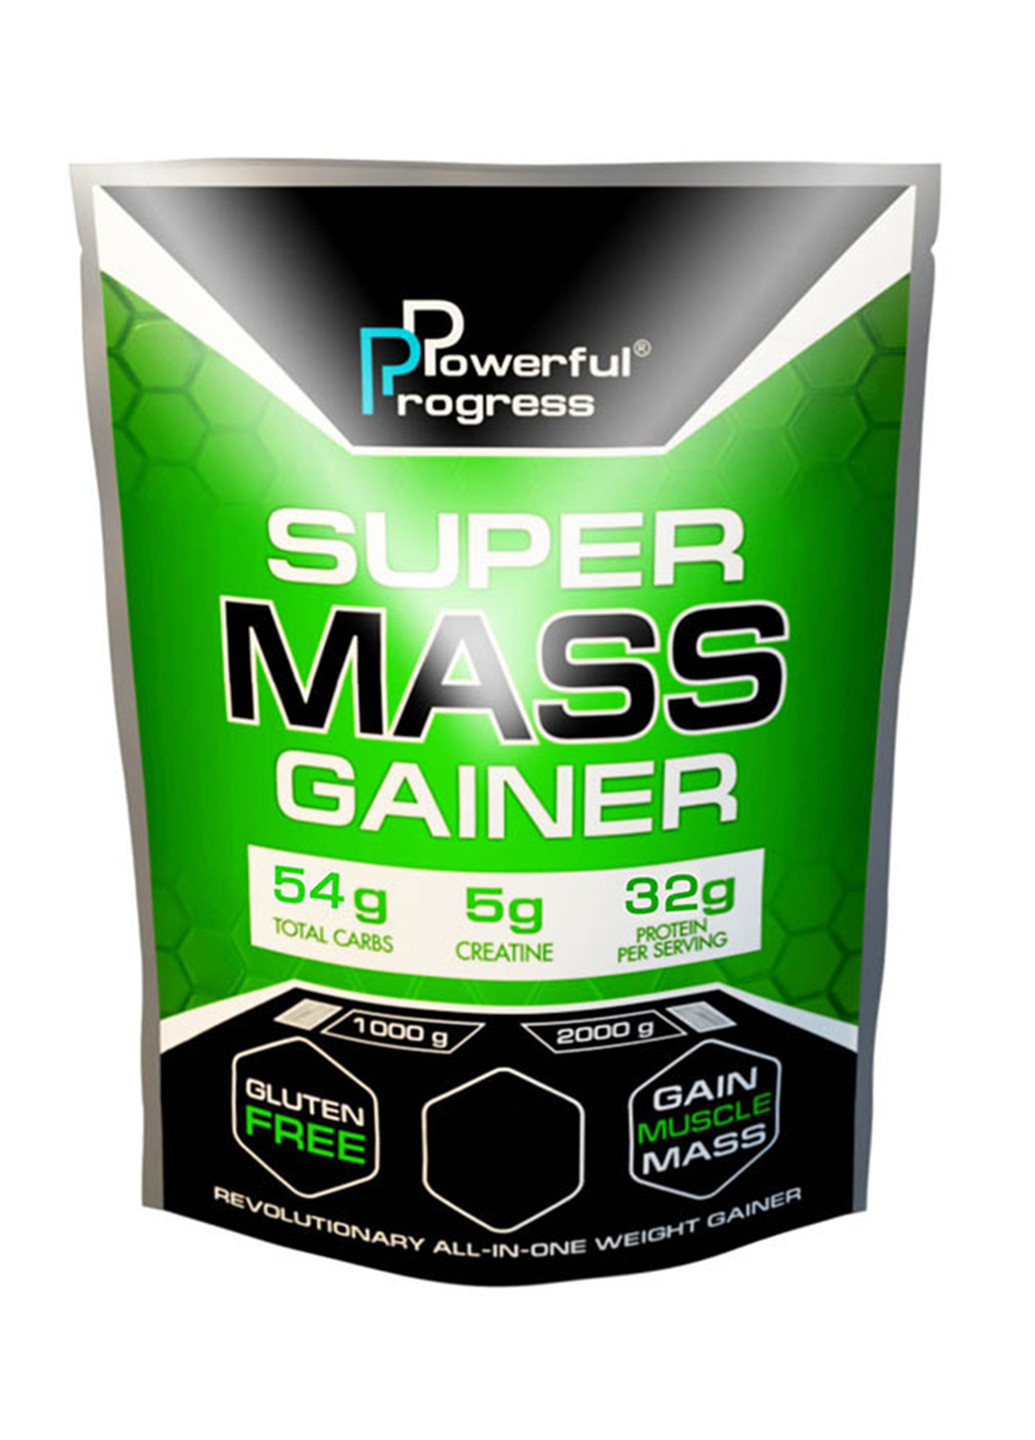 Вуглеводний гейнер Super Mass Gainer - 1000g Tiramisu Powerful Progress гейнер (244701379)